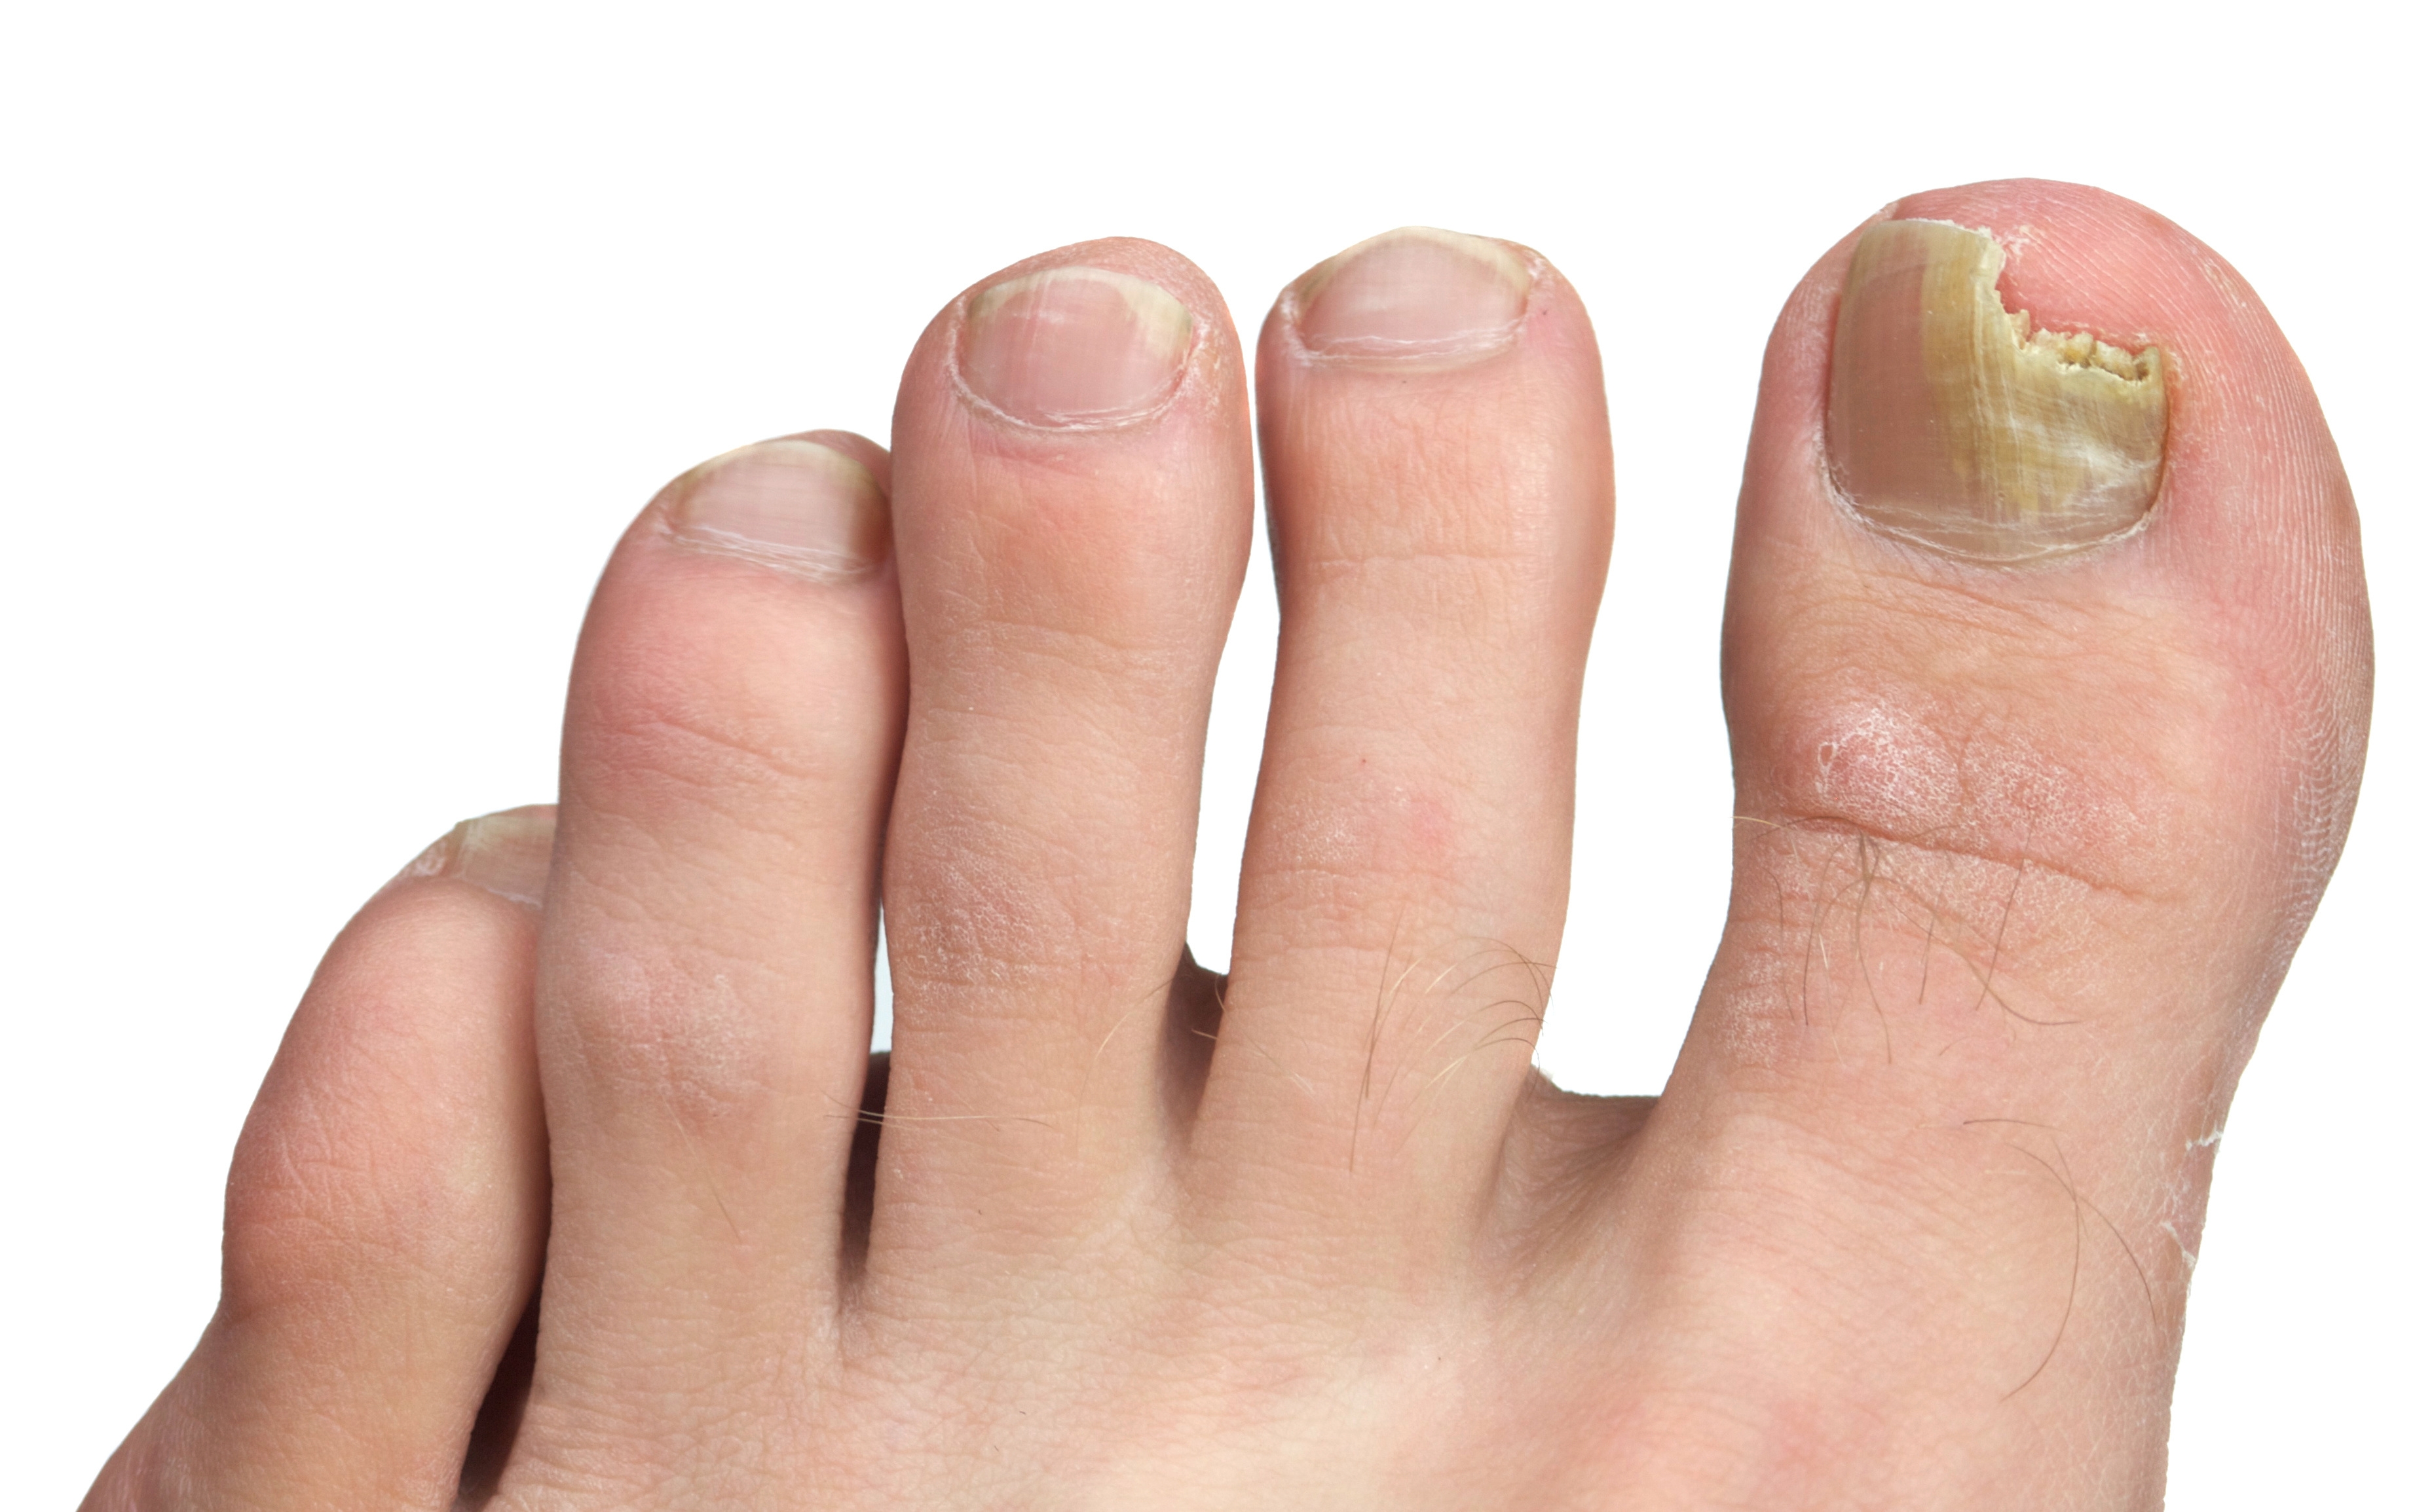 Man foot with nail fungus